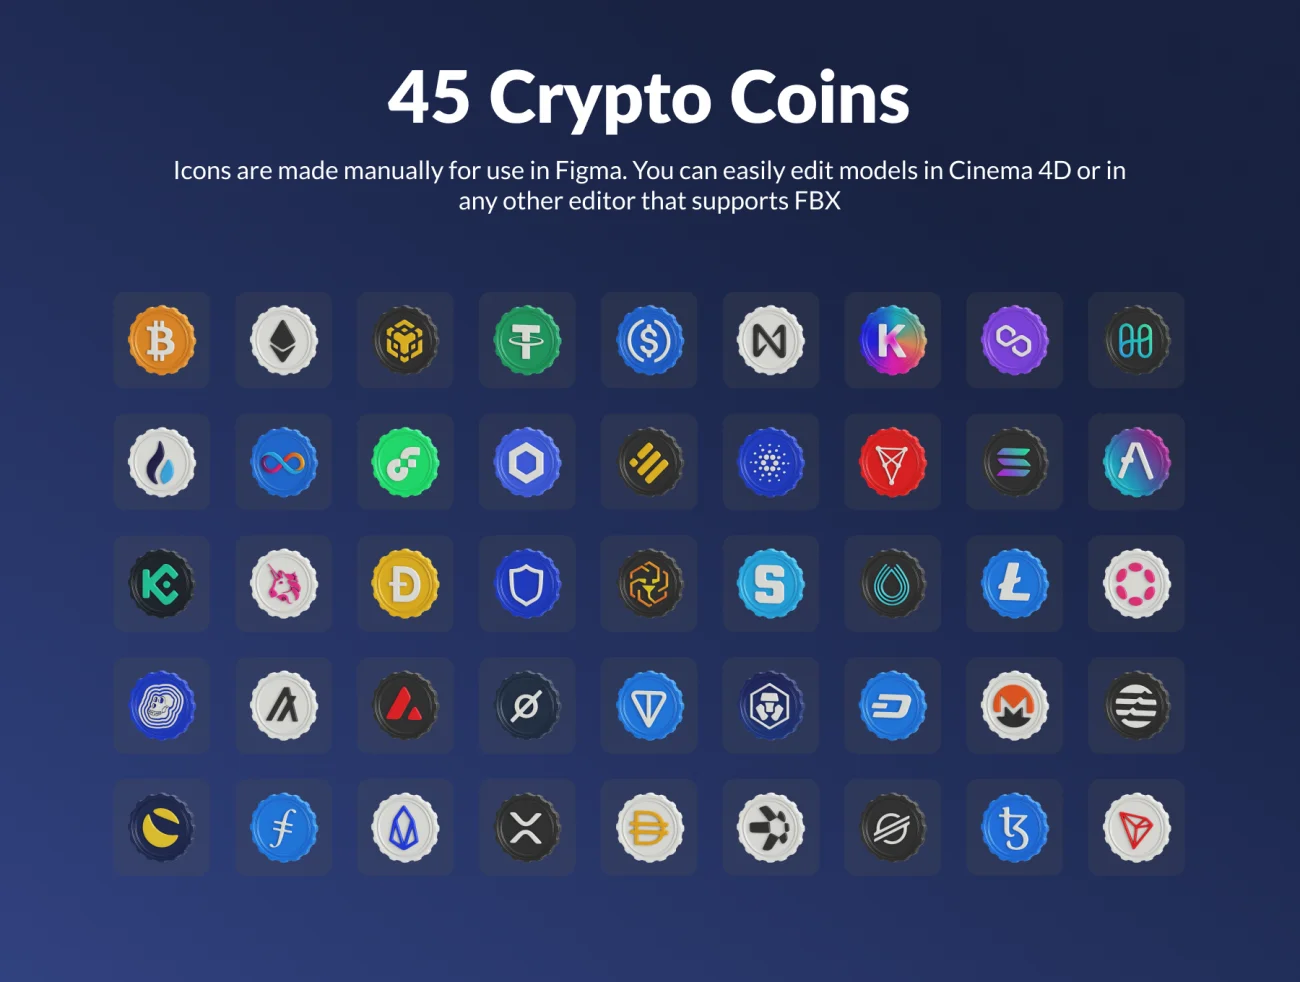 45款加密硬币3D模型图标集 Crypto Coins & 3D Icon Set .figam. c4d. fbx. png. blend-3D/图标-到位啦UI